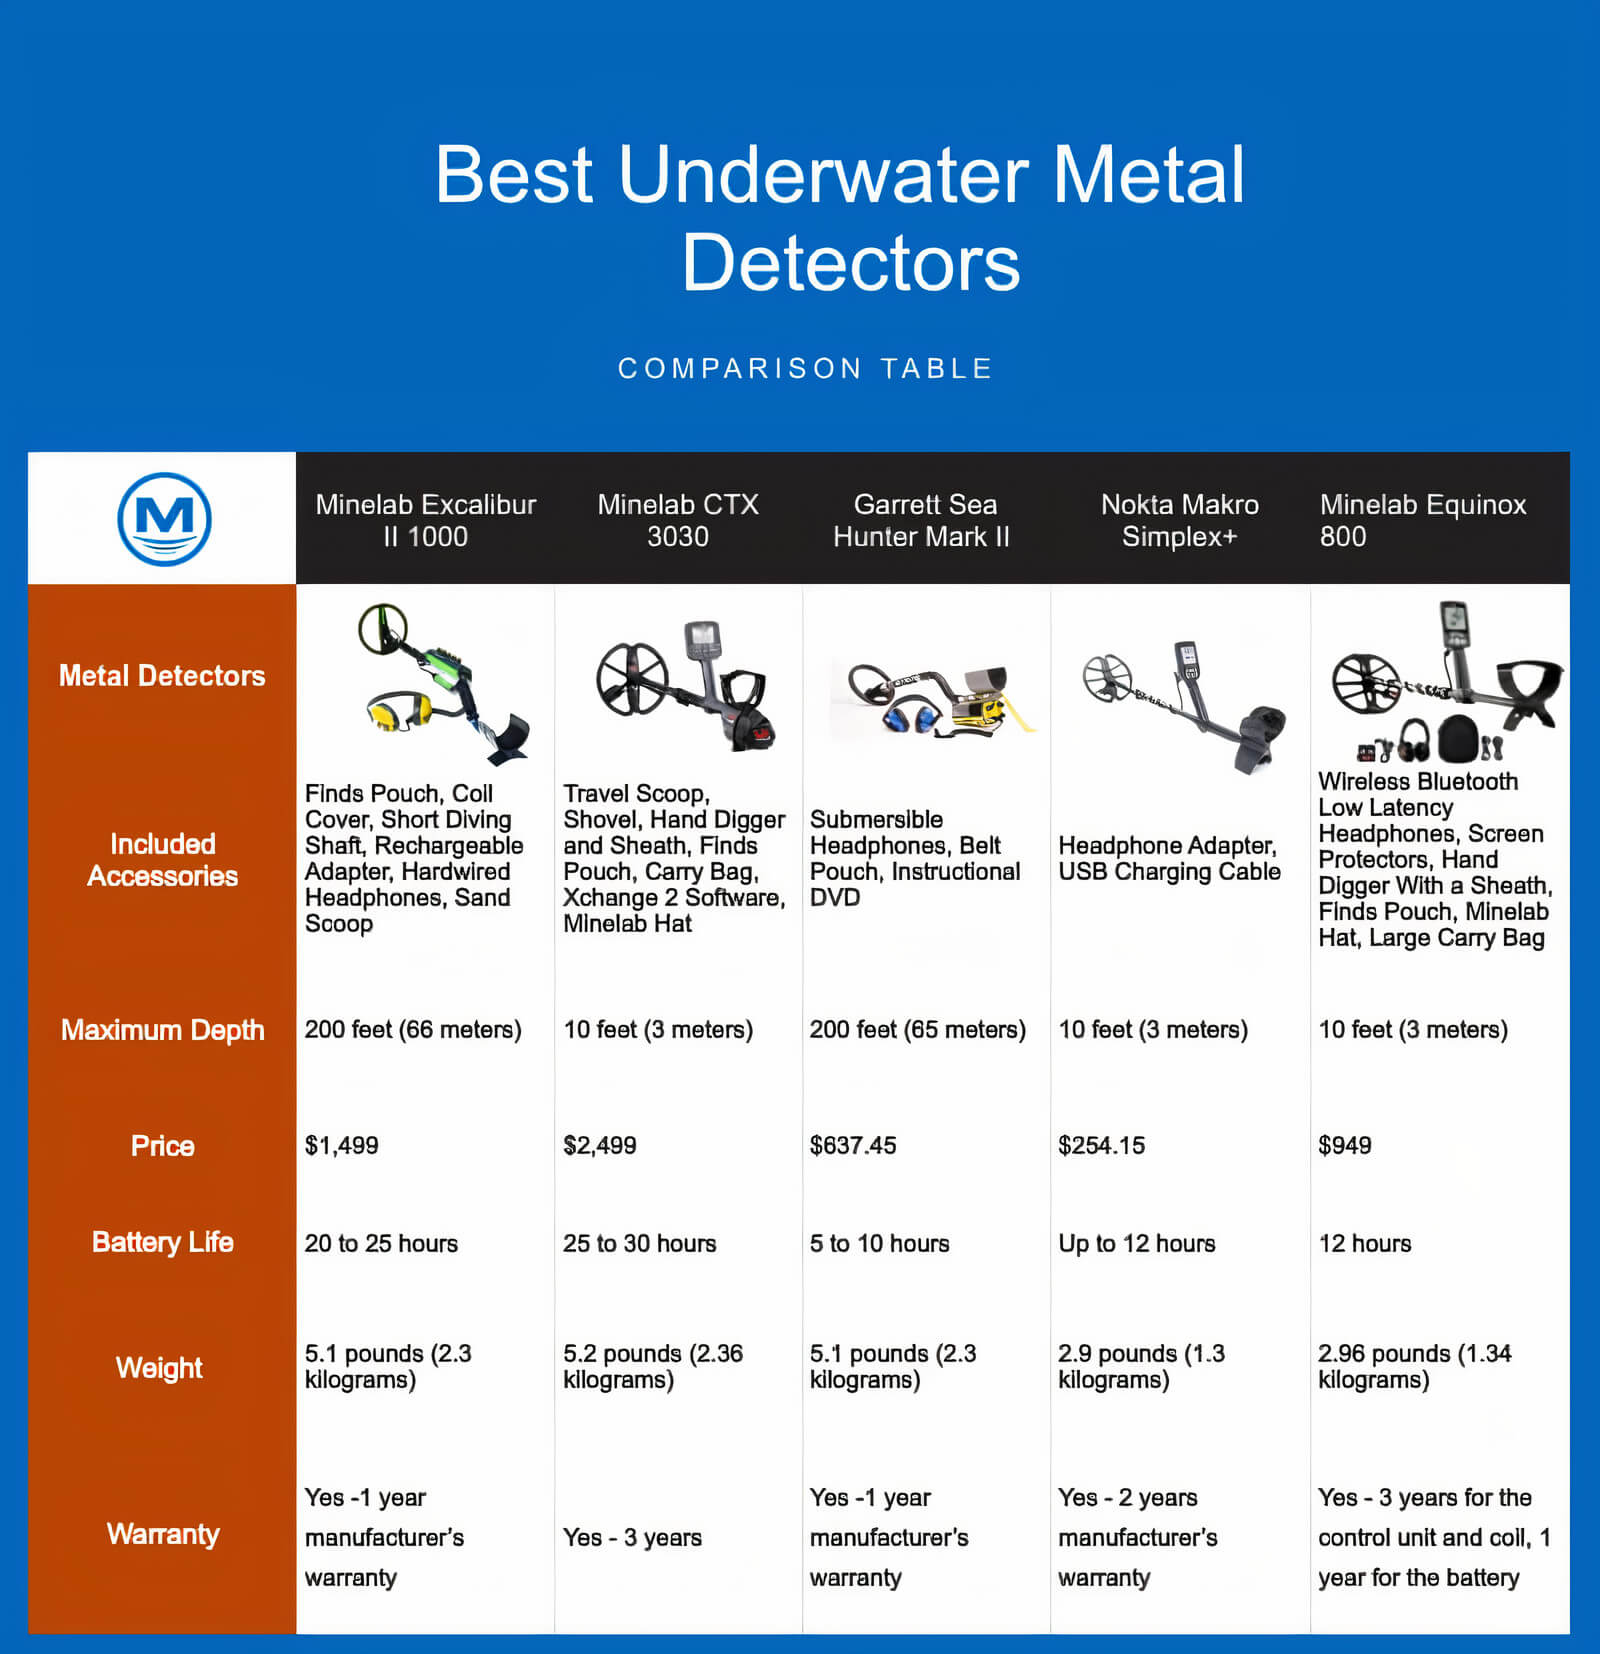 Best Underwater Metal Detectors Comparison